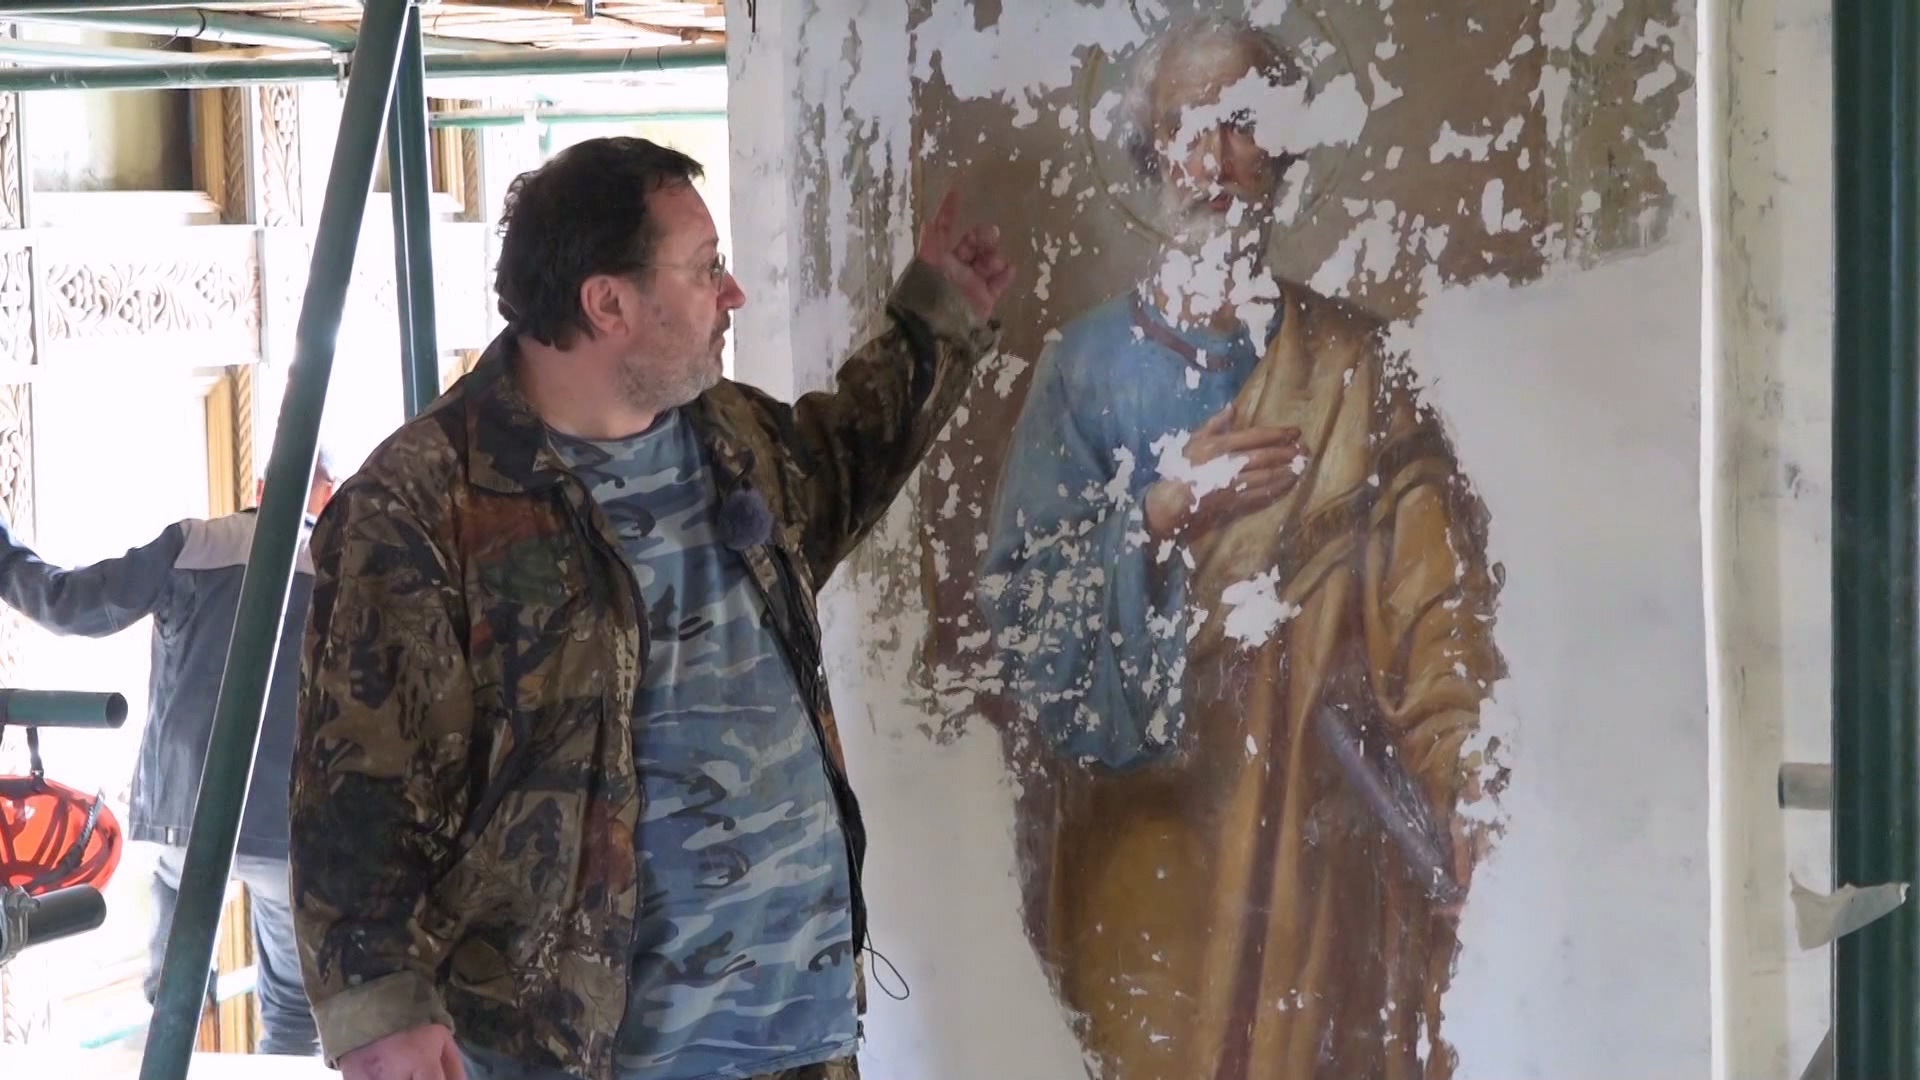 Утраченную 200-летнюю роспись восстанавливают в соборе Челябинской области